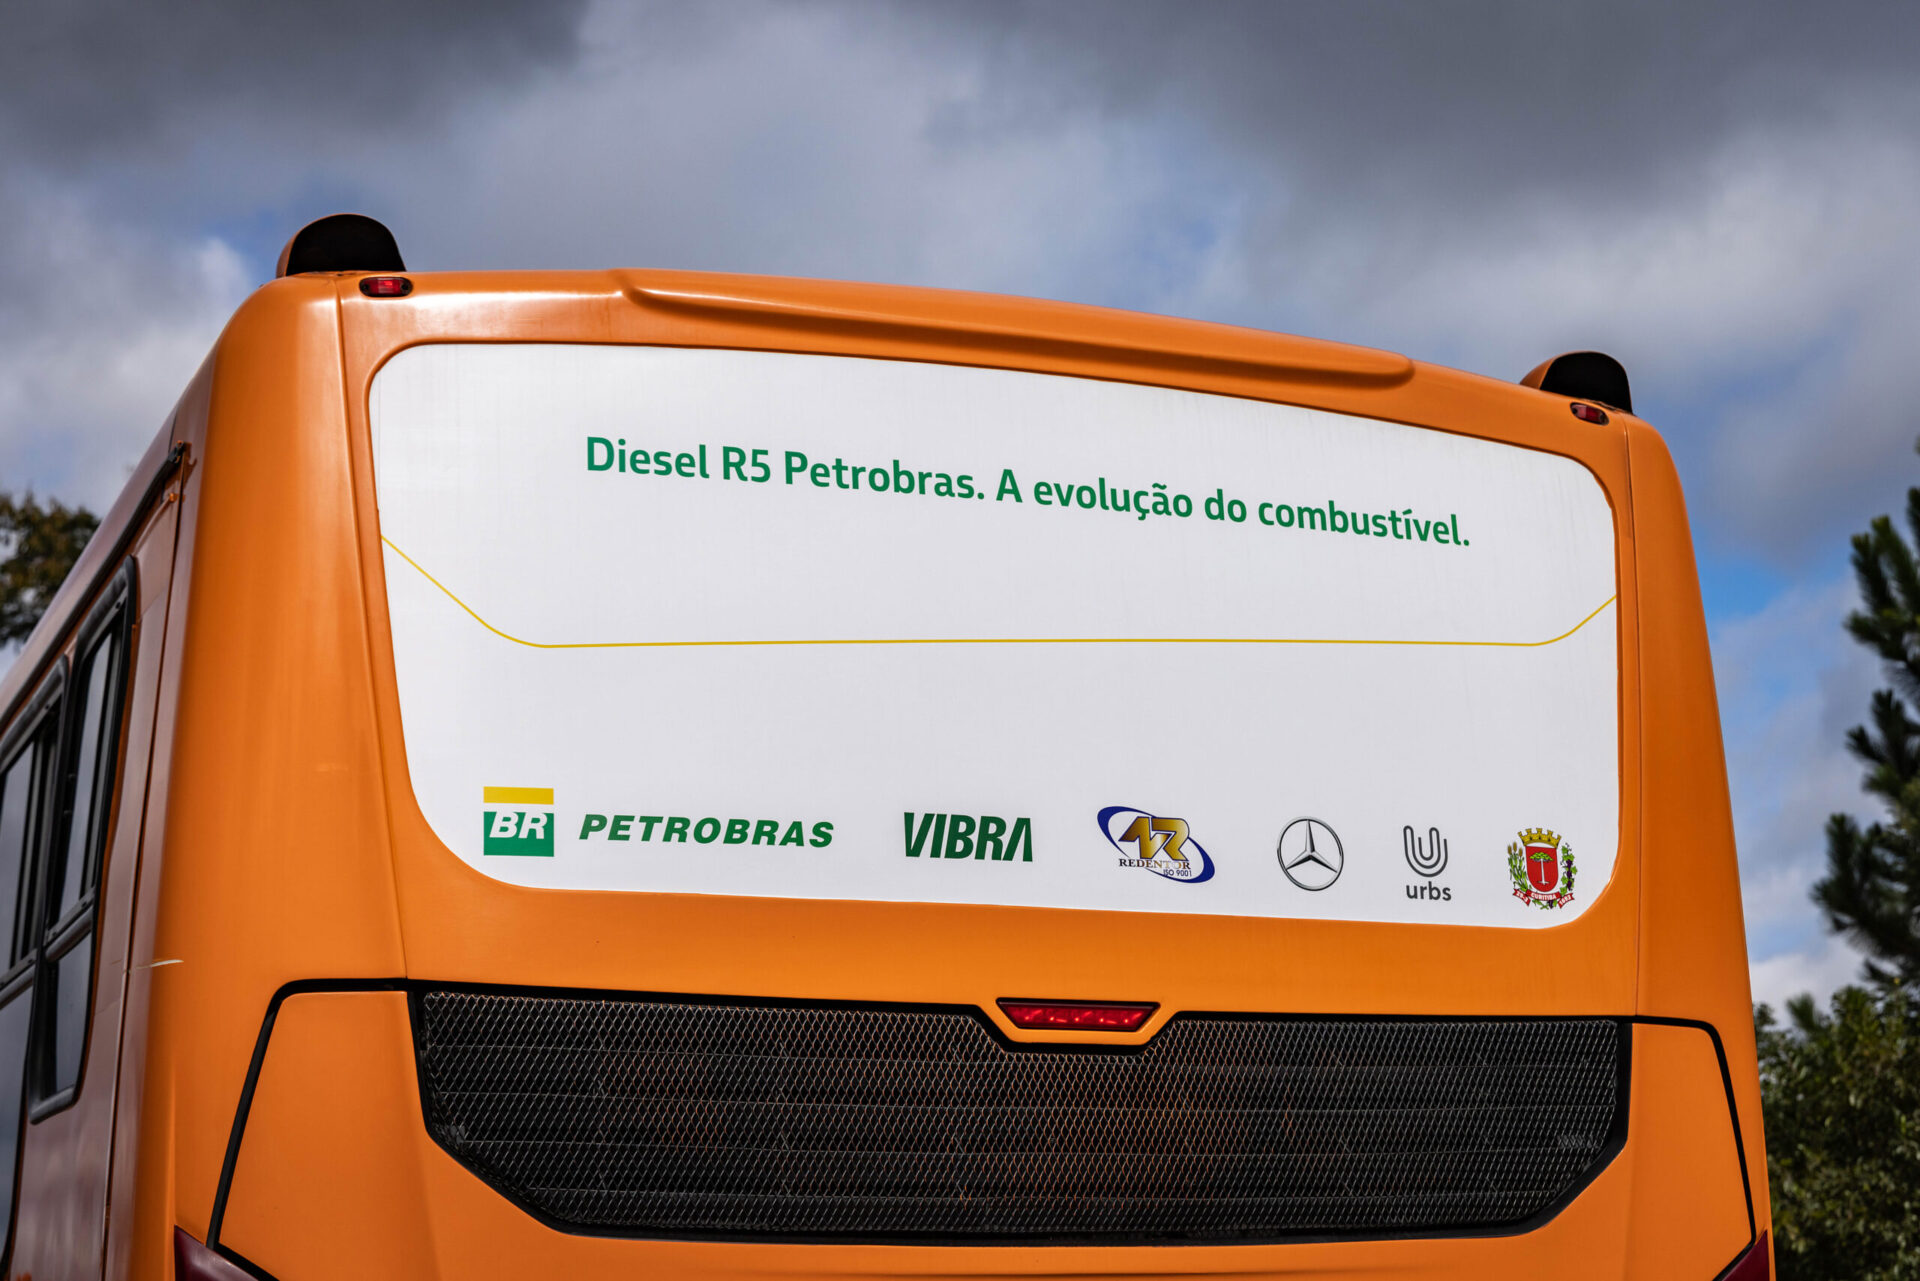 Ônibus Mercedes-Benz são utilizados em testes com Diesel Renovável R5 da Petrobrás